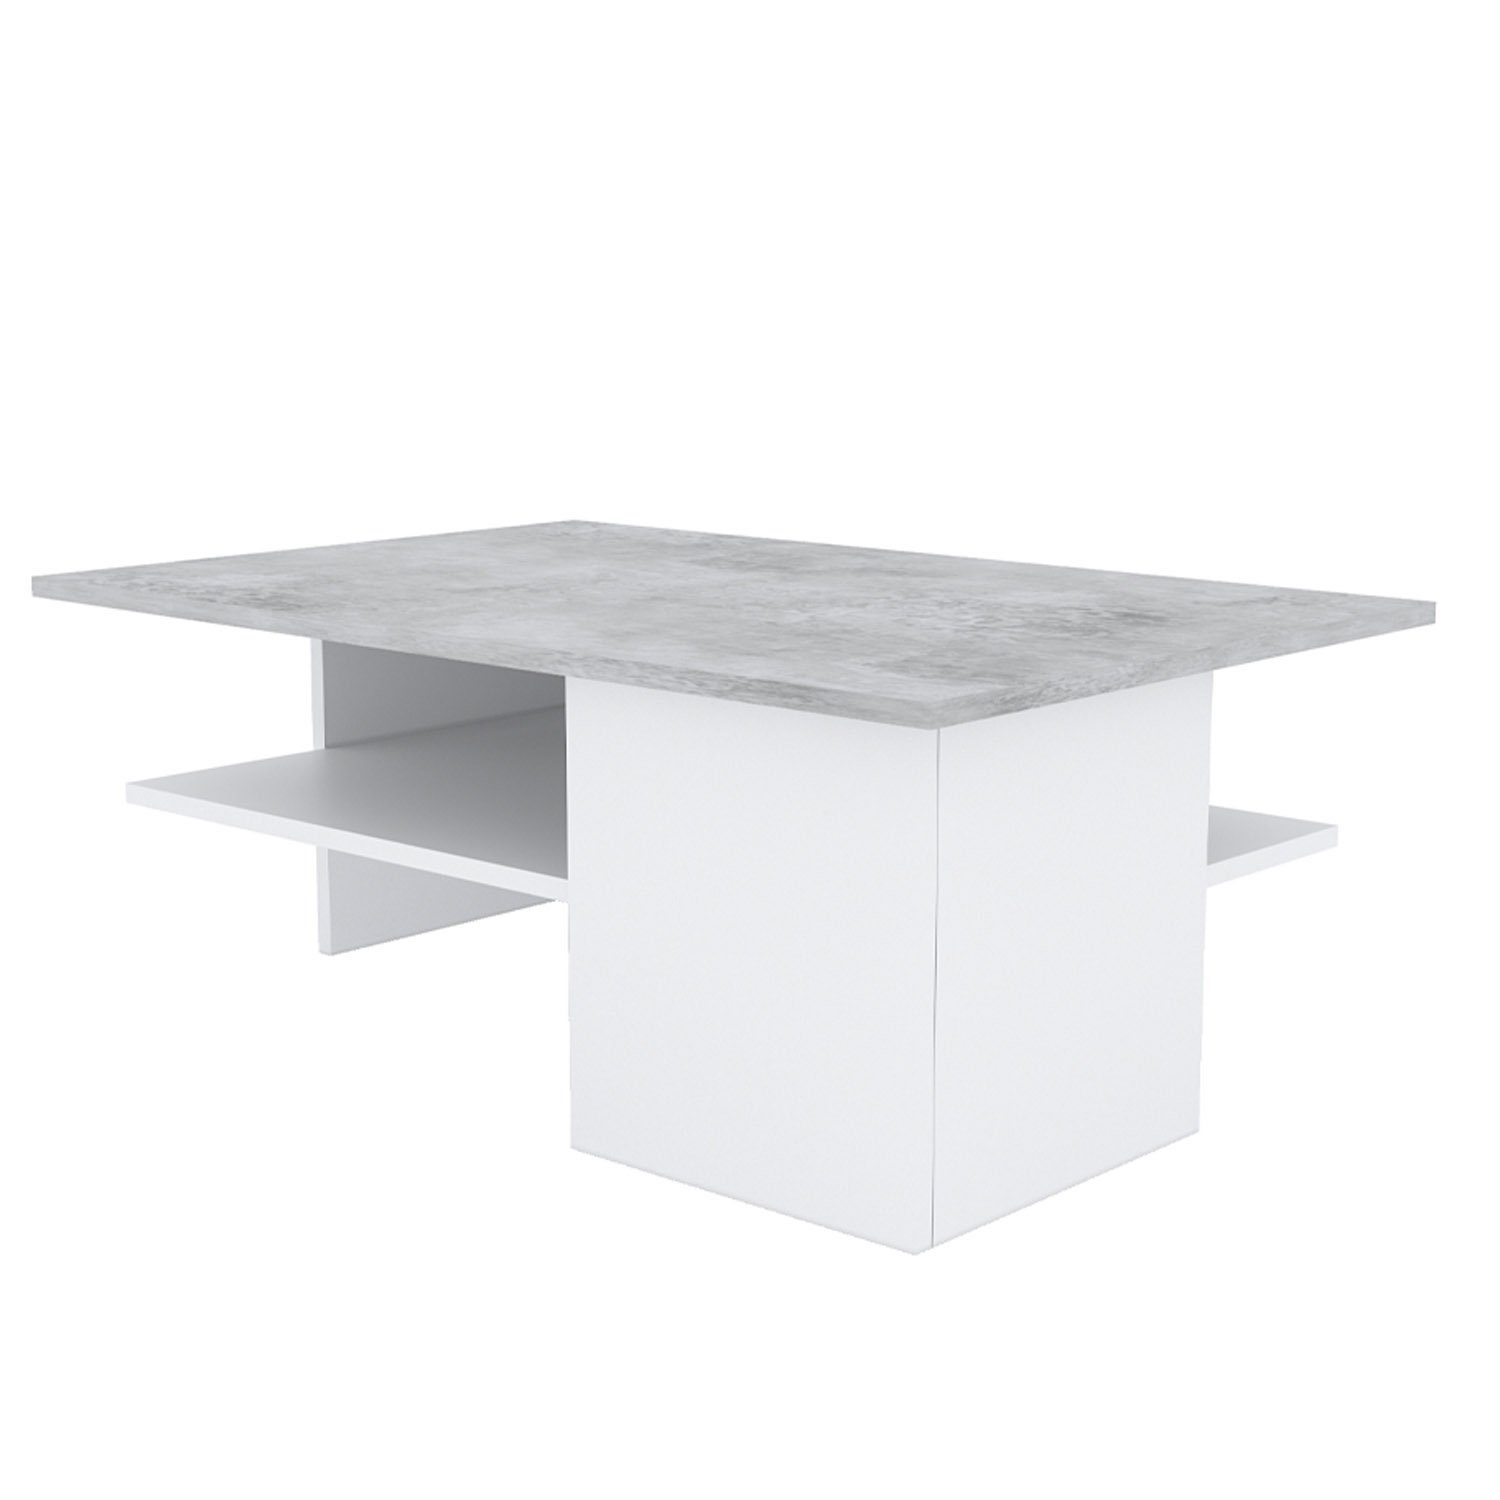 Homestyle4u Couchtisch Wohnzimmertisch Sofatisch Holz Beton grau (kein Set) Tisch Natur